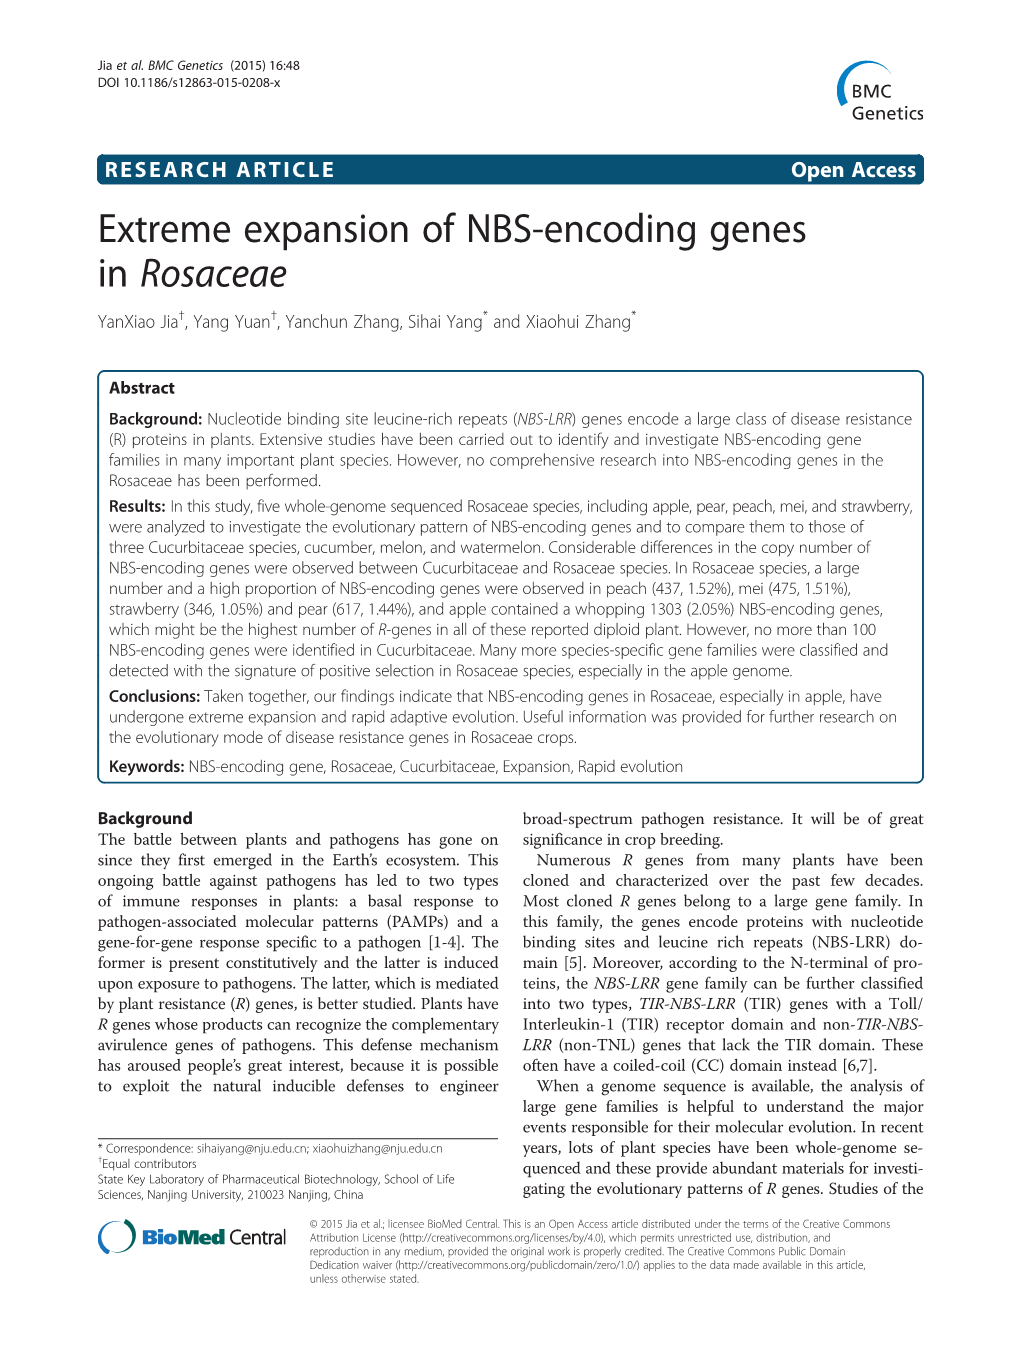 Extreme Expansion of NBS-Encoding Genes in Rosaceae Yanxiao Jia†, Yang Yuan†, Yanchun Zhang, Sihai Yang* and Xiaohui Zhang*